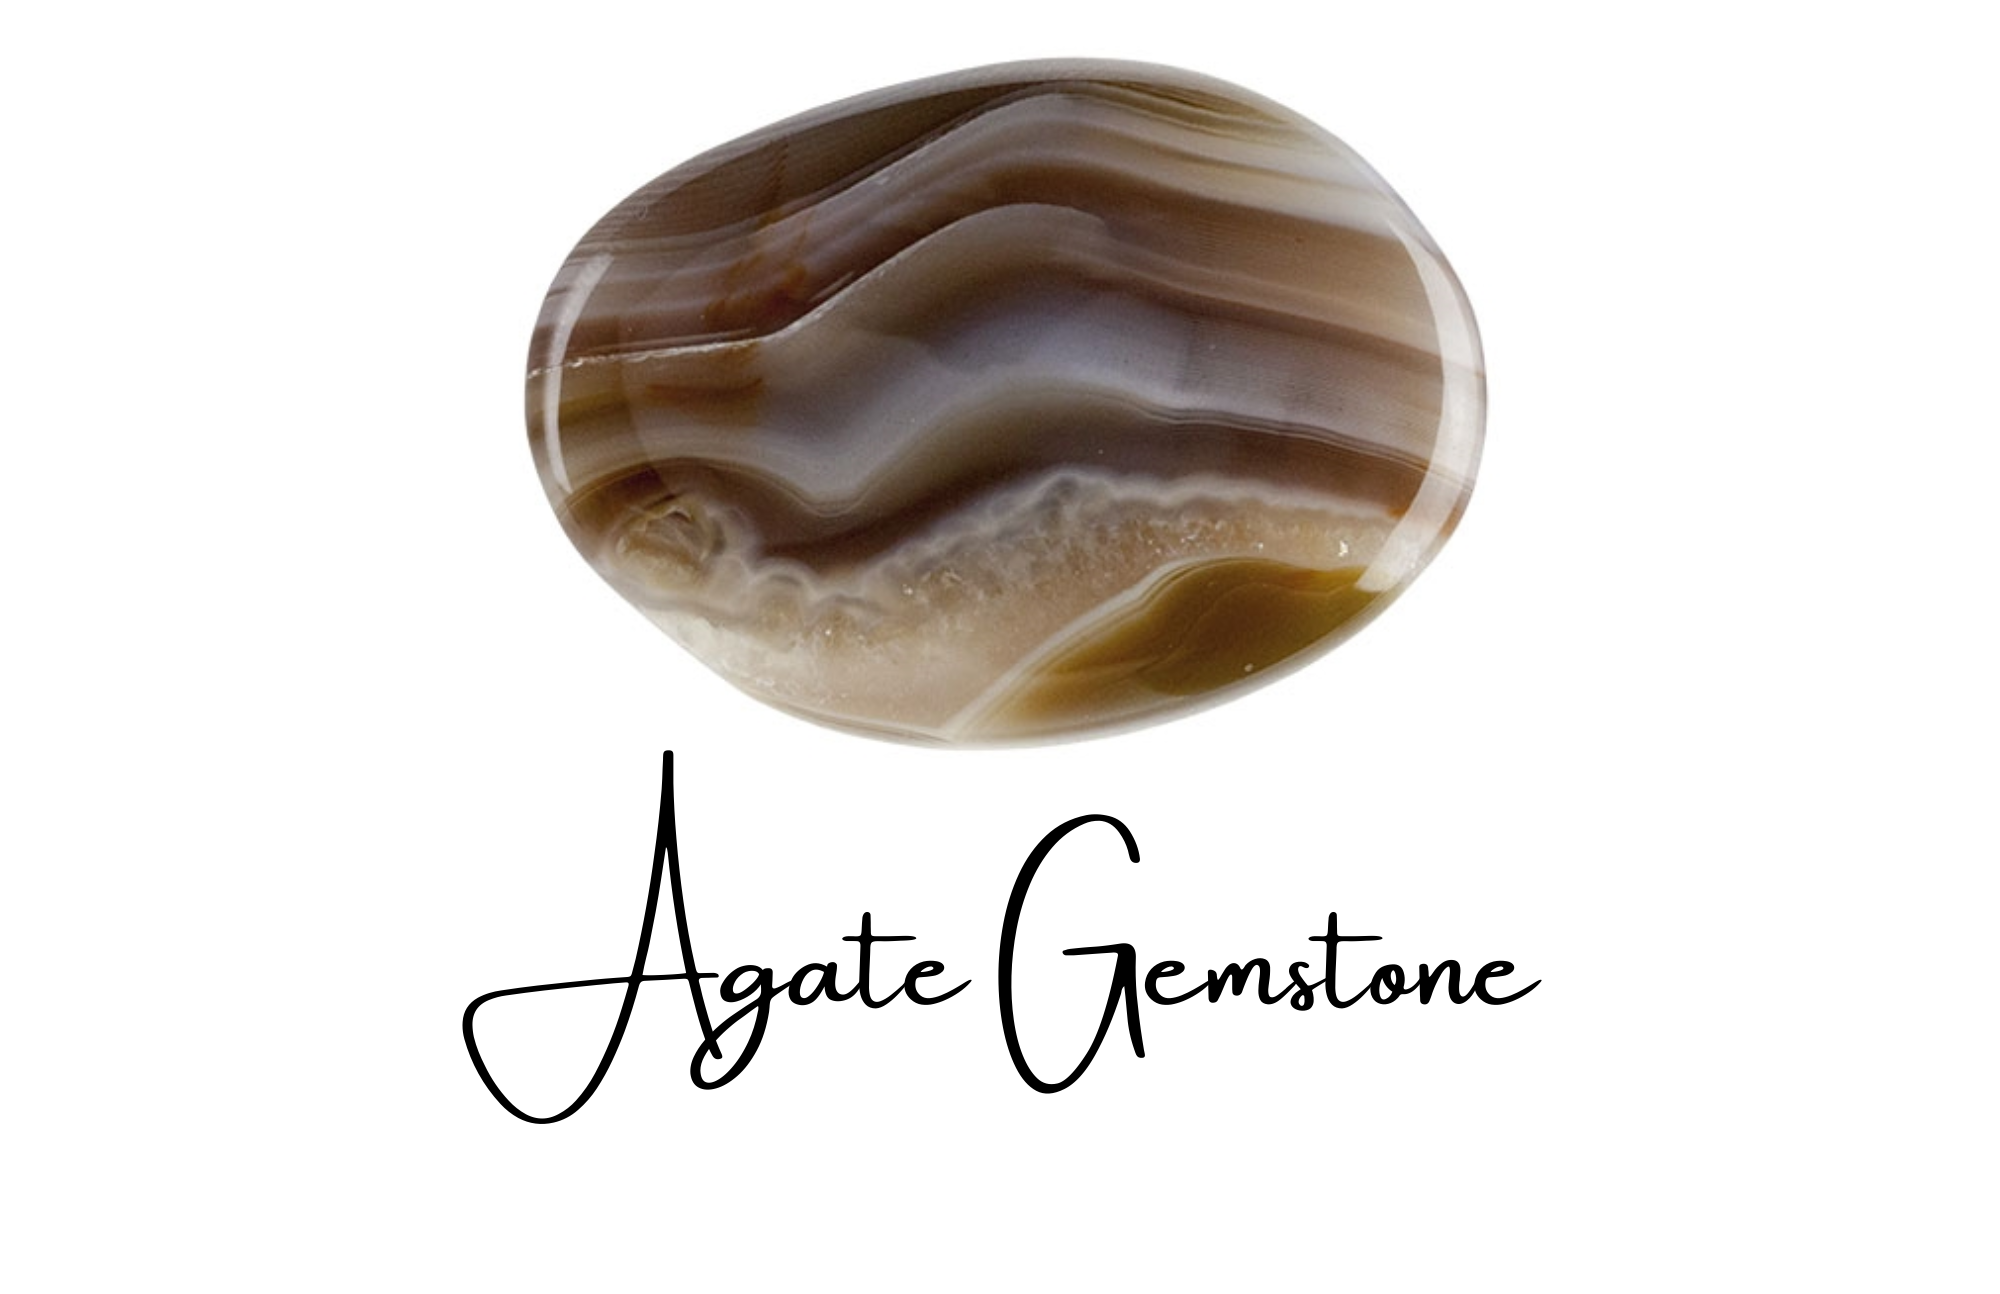 A striped agate gemstone